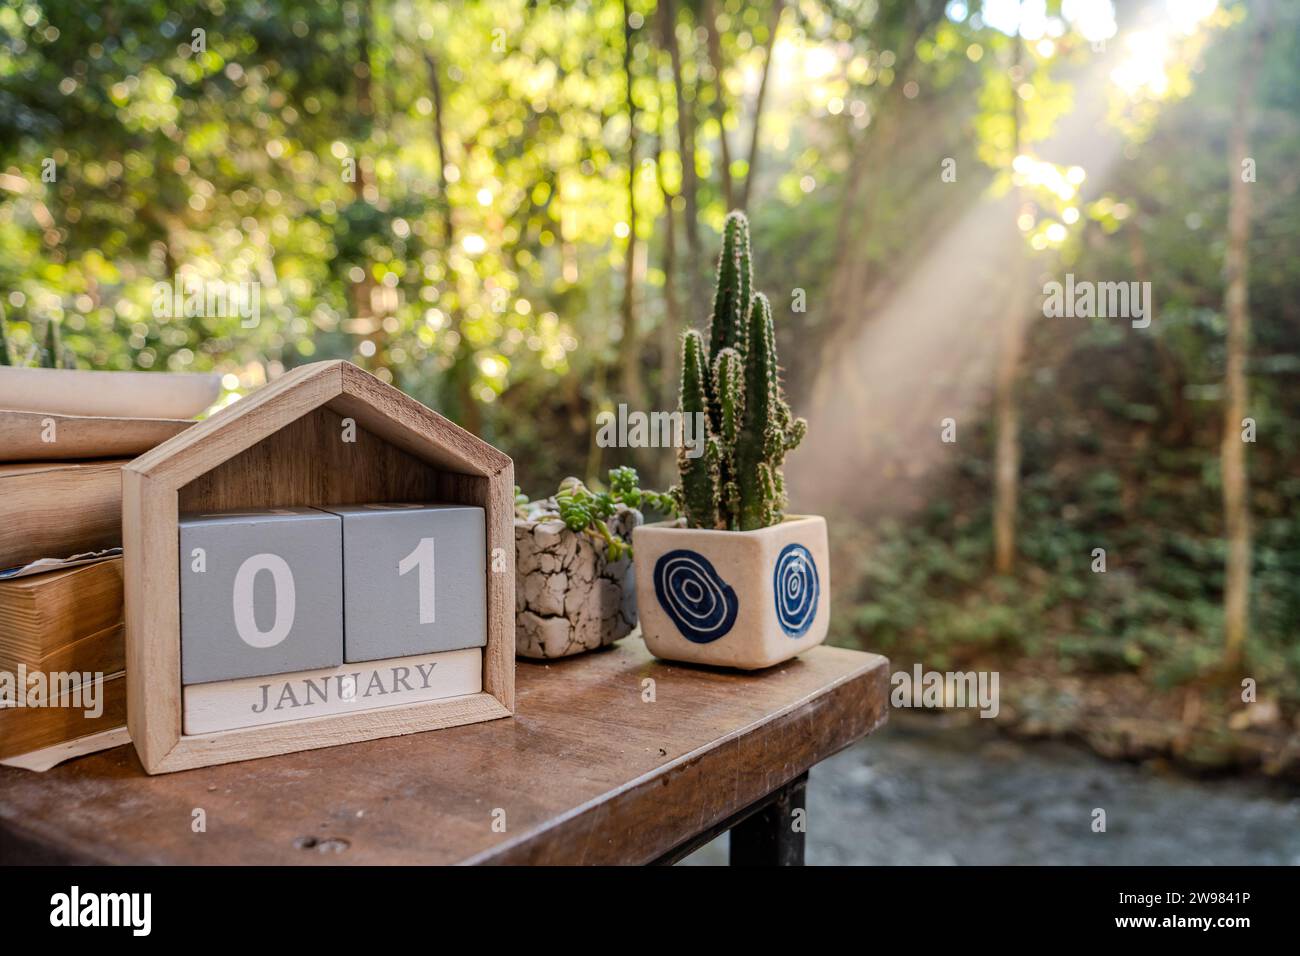 Janvier 1, date texte sur le bloc de cube calendrier sur la table en bois avec livre et cactus dans un pot de plantes, premier lever de soleil de l'année en arrière-plan avec forêt Banque D'Images